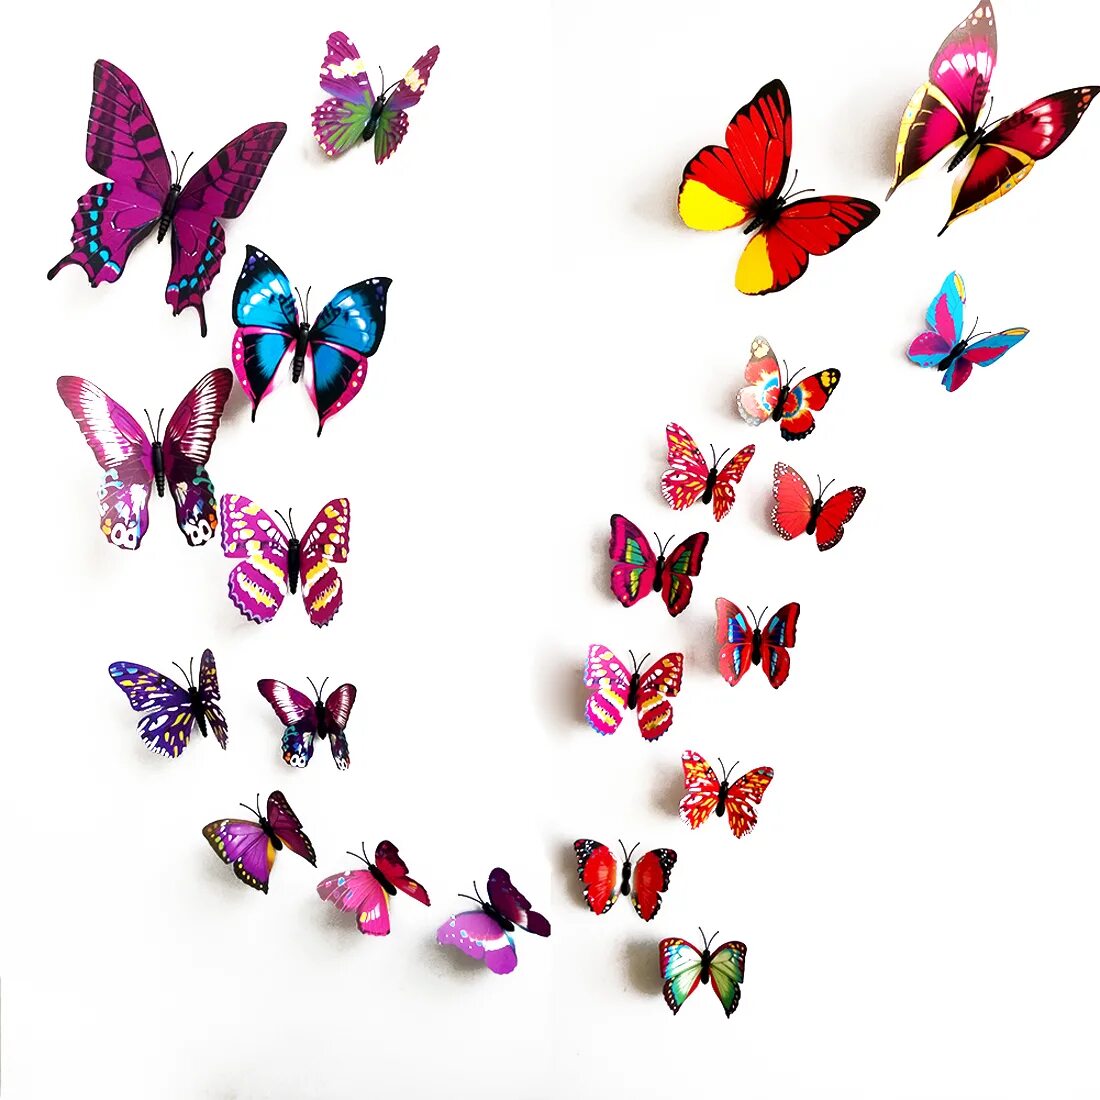 Бабочки клеит. Декор из бабочек. Бабочки украшение на стену. Бабочки для декора. Бабочки декоративные на стену.